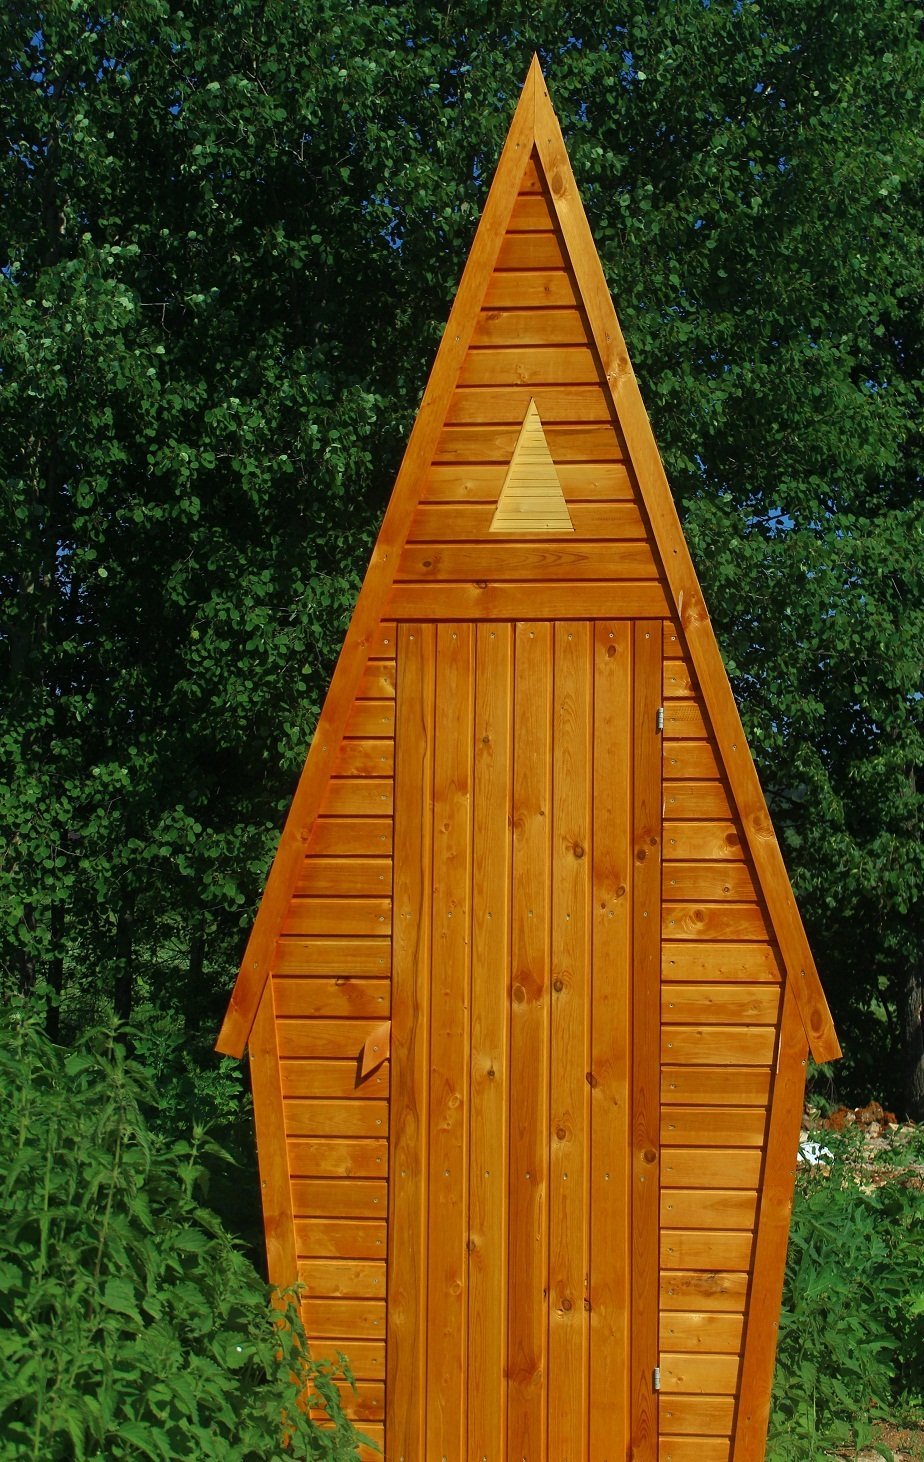 Уличный туалет для дачи деревянный цена